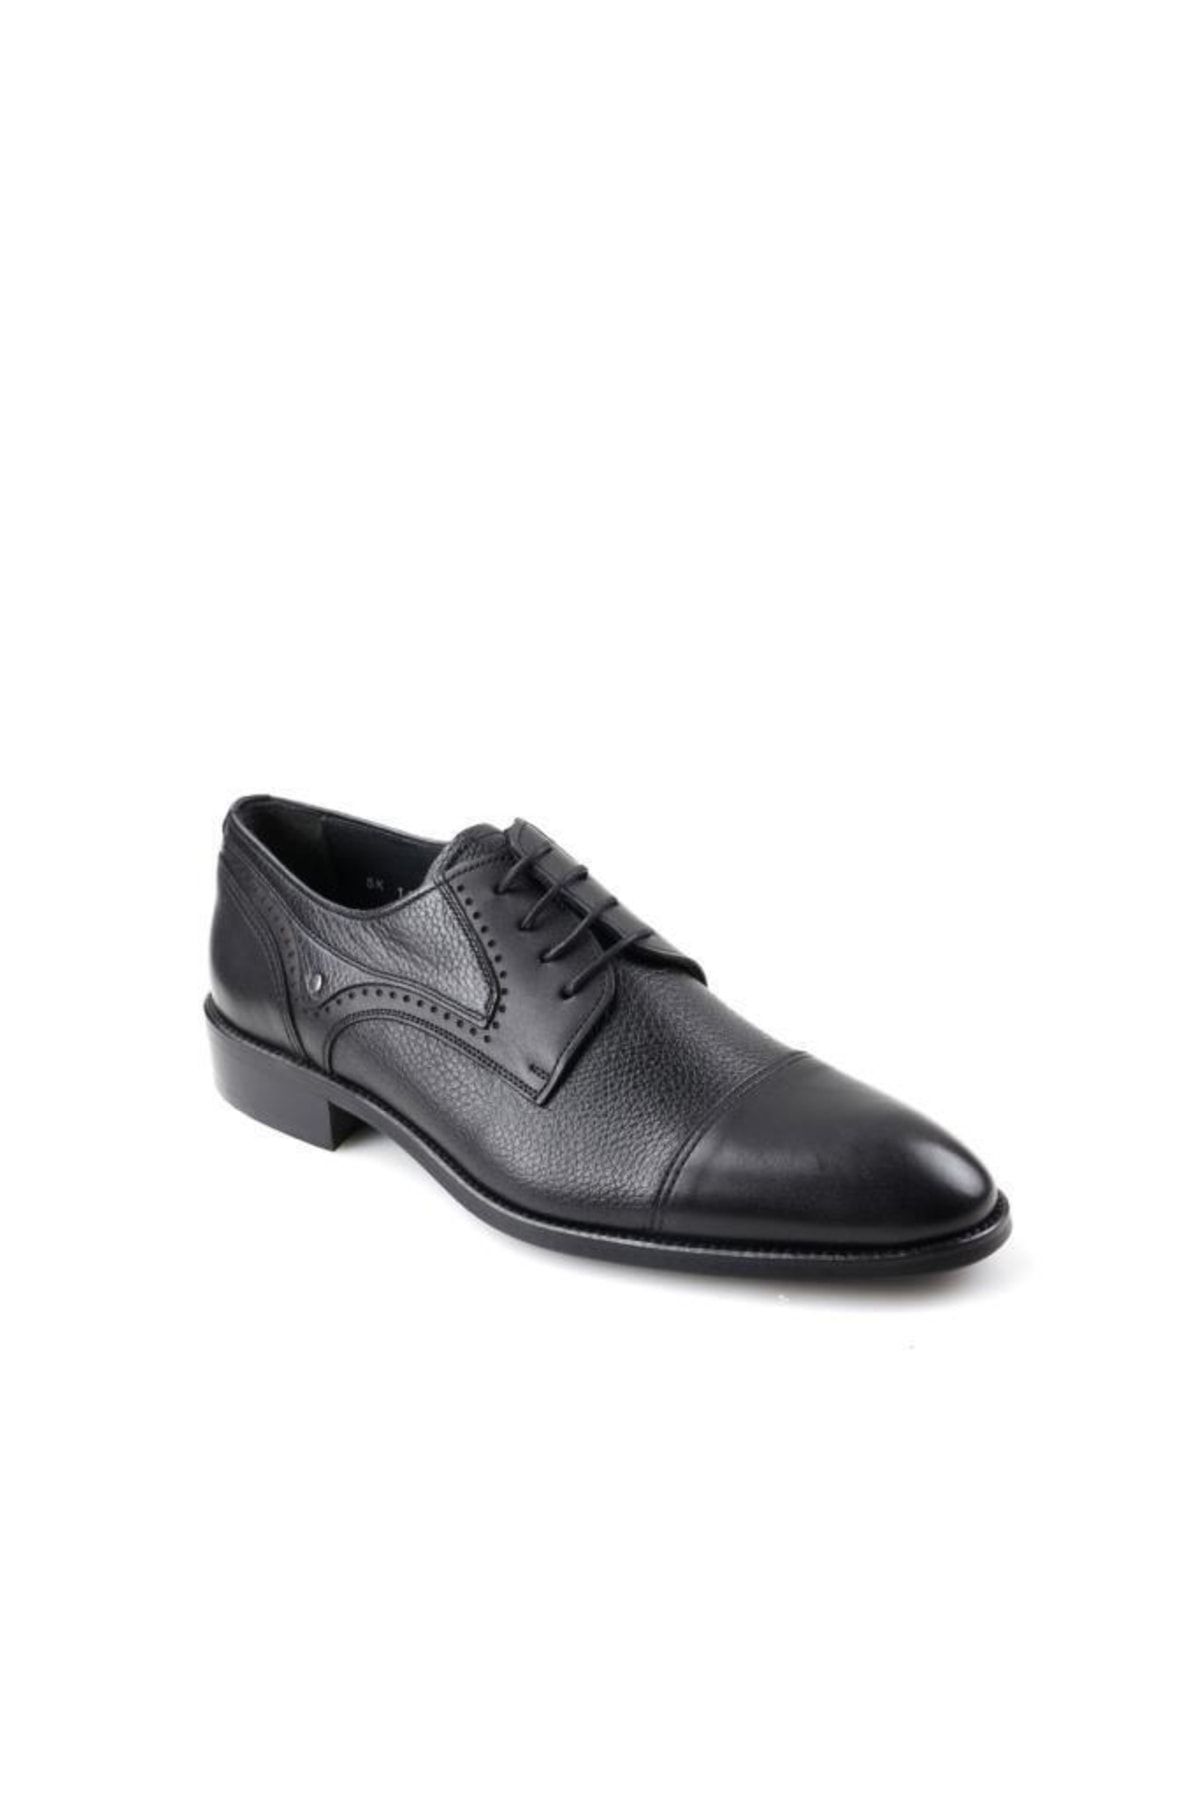 Smart 1621 Siyah Deri Klasik Erkek Microlight Taban Ayakkabı